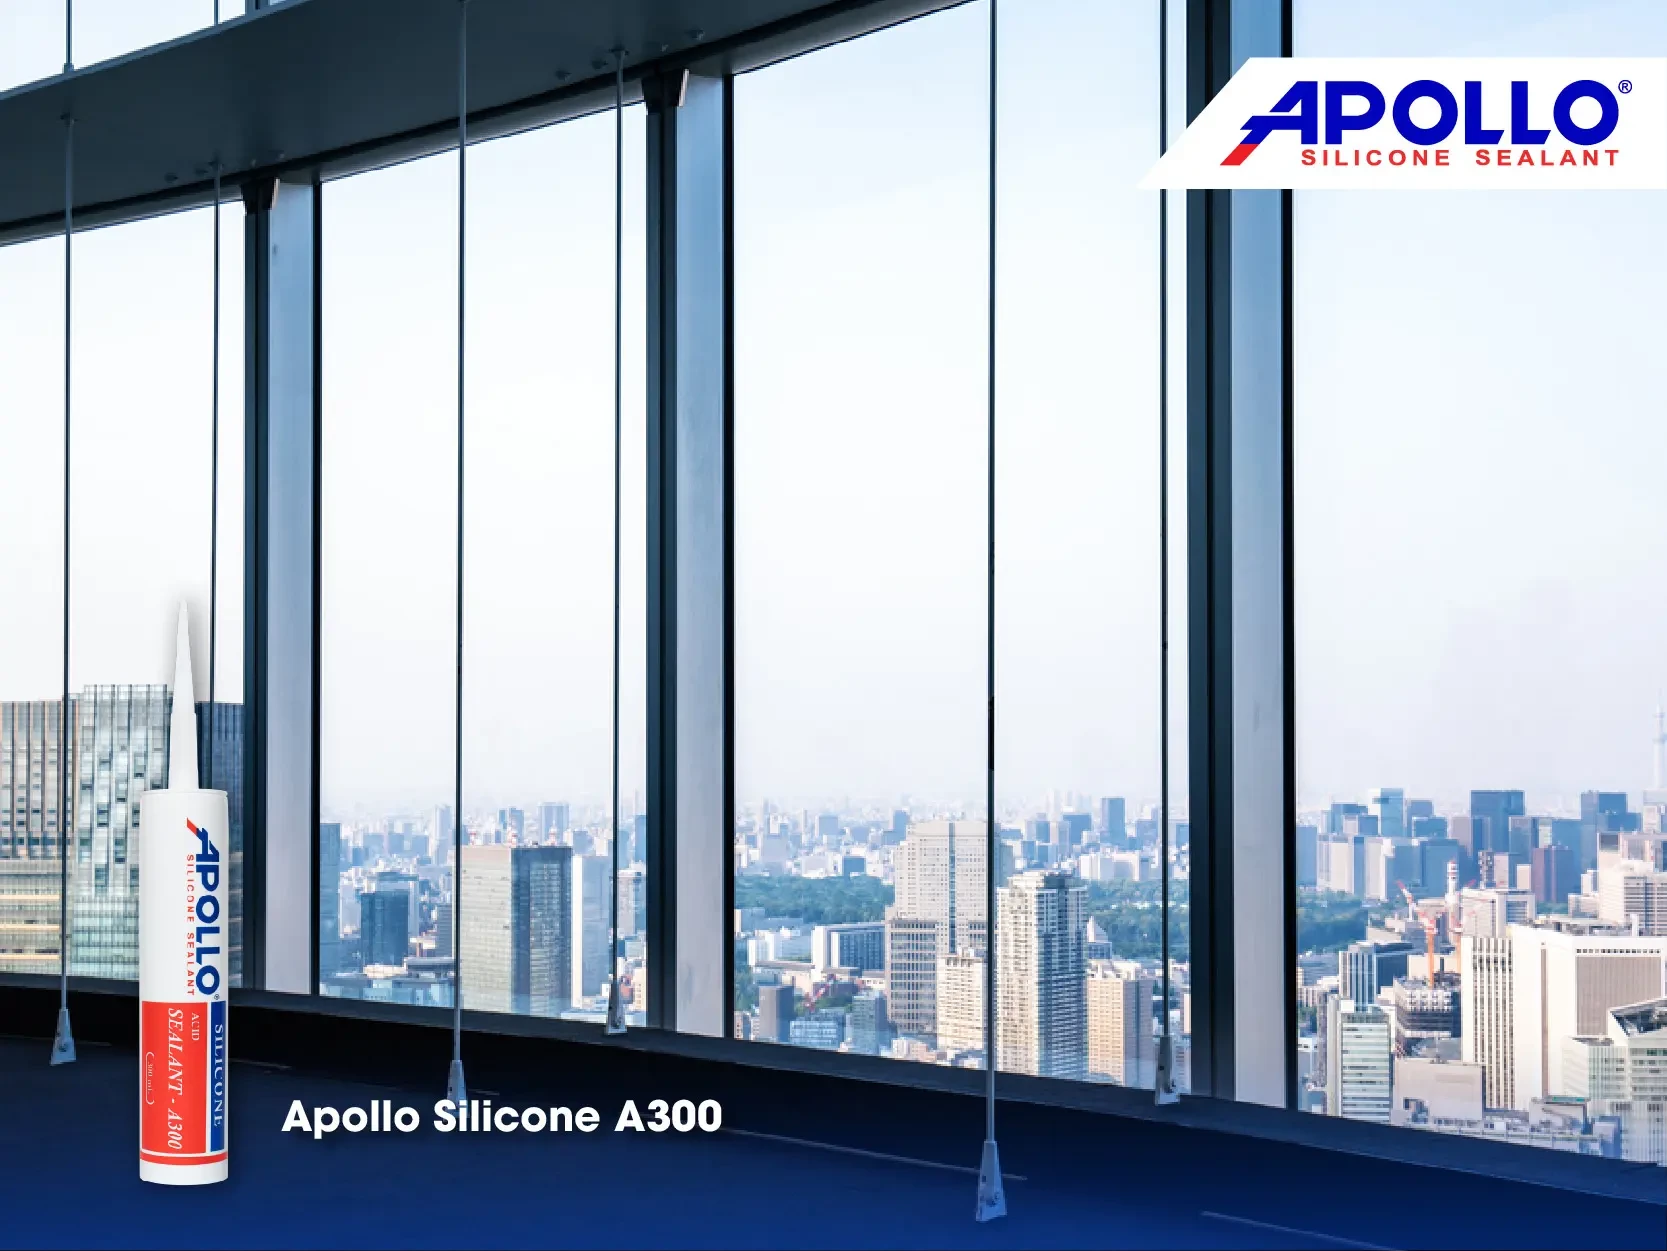 Sản phẩm Apollo Silicone A300 chuyên dùng để thi công bề mặt kính 